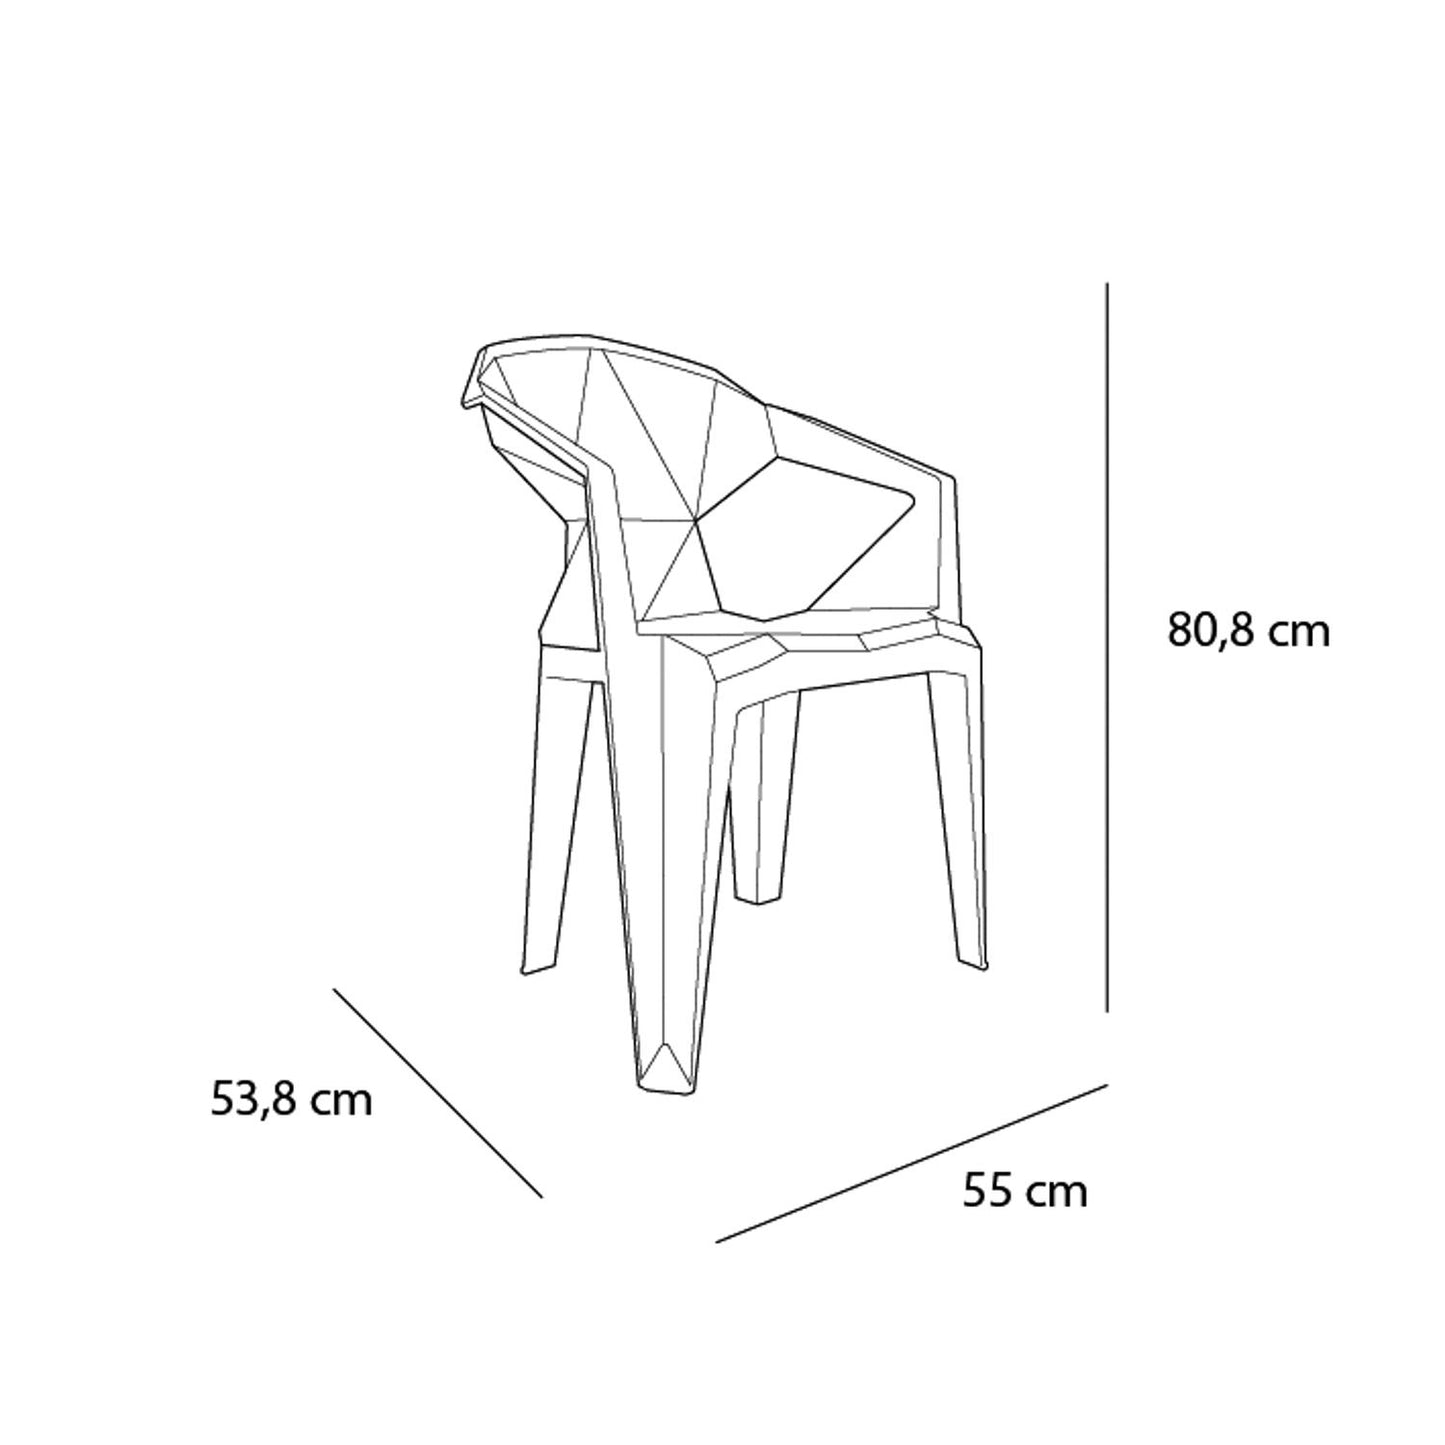 Garbar delta set 2 silla con brazos exterior blanco